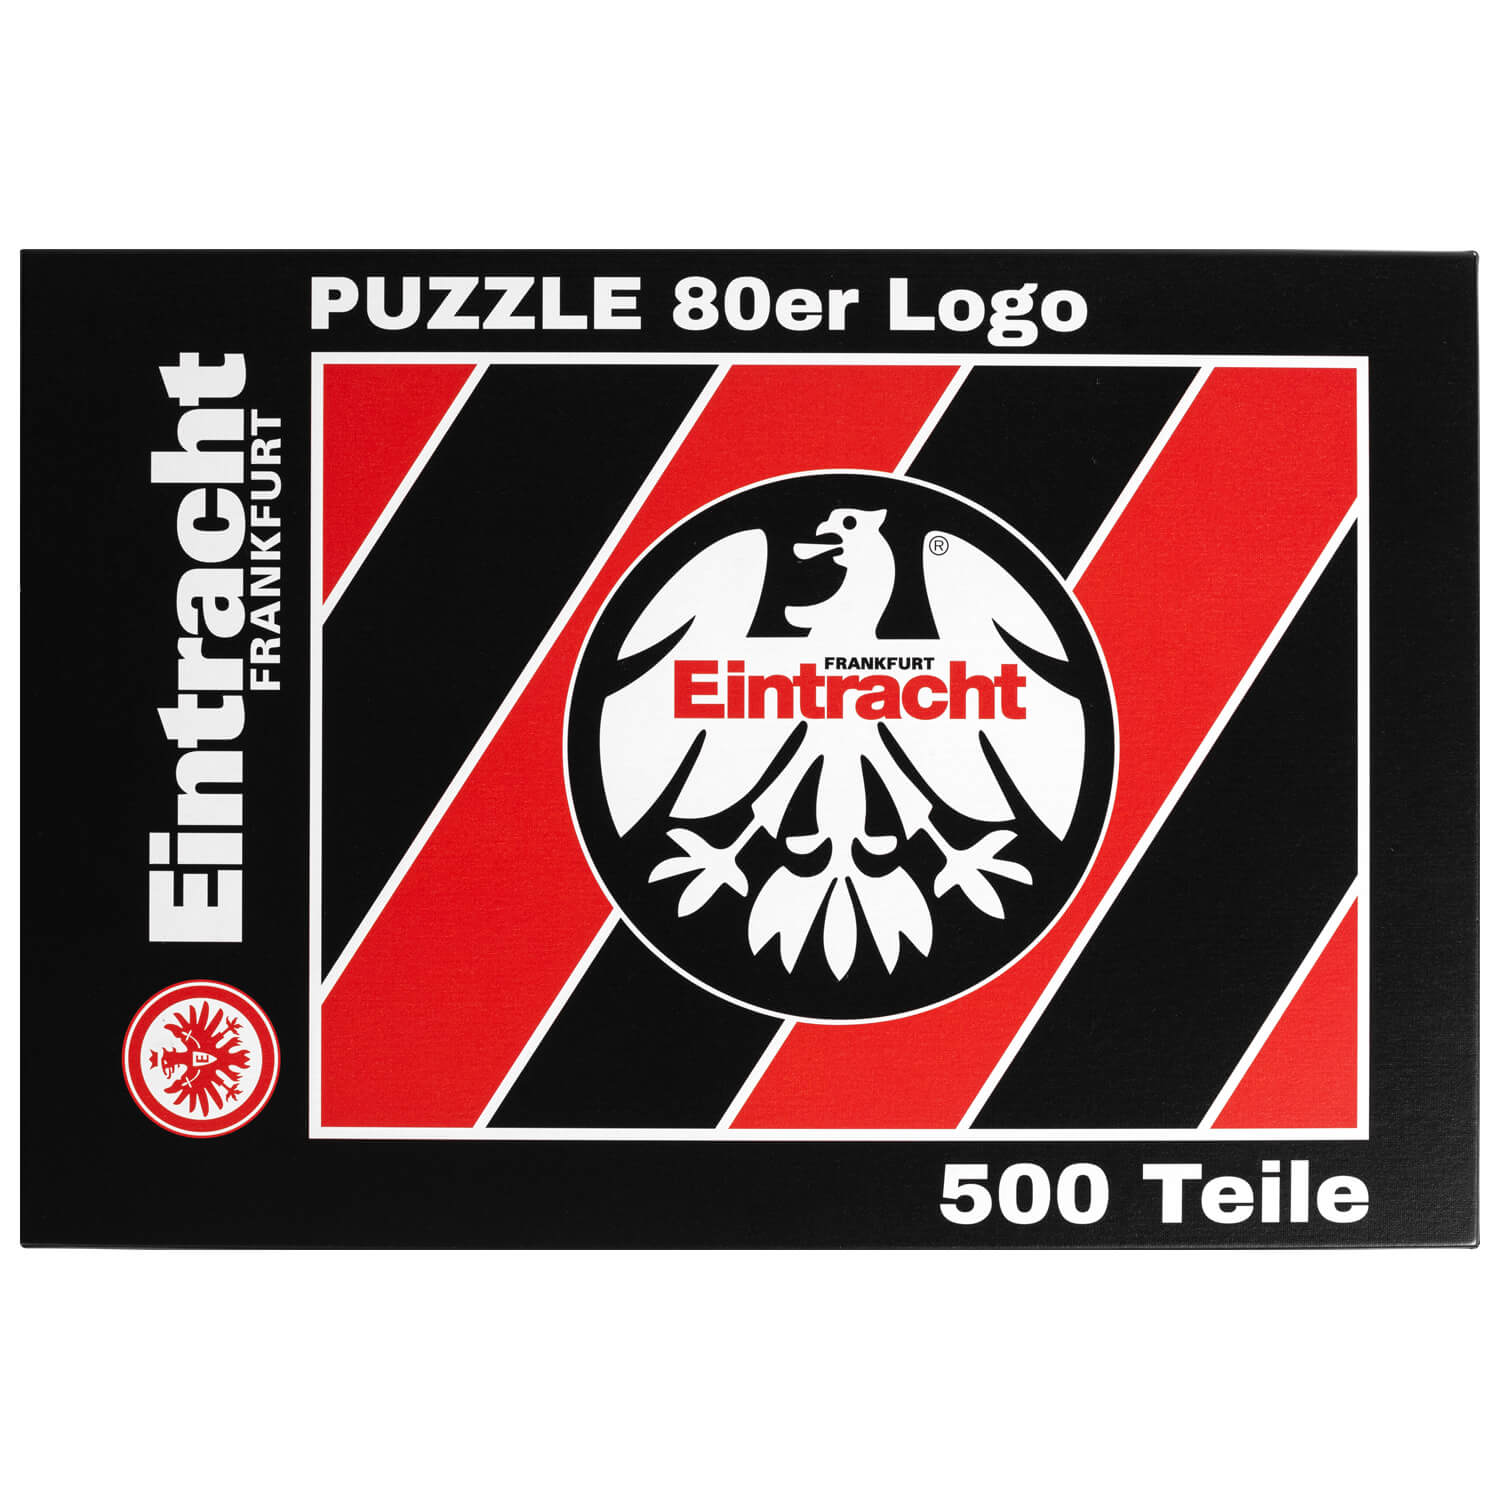 Bild 1: Puzzle 80er Logo